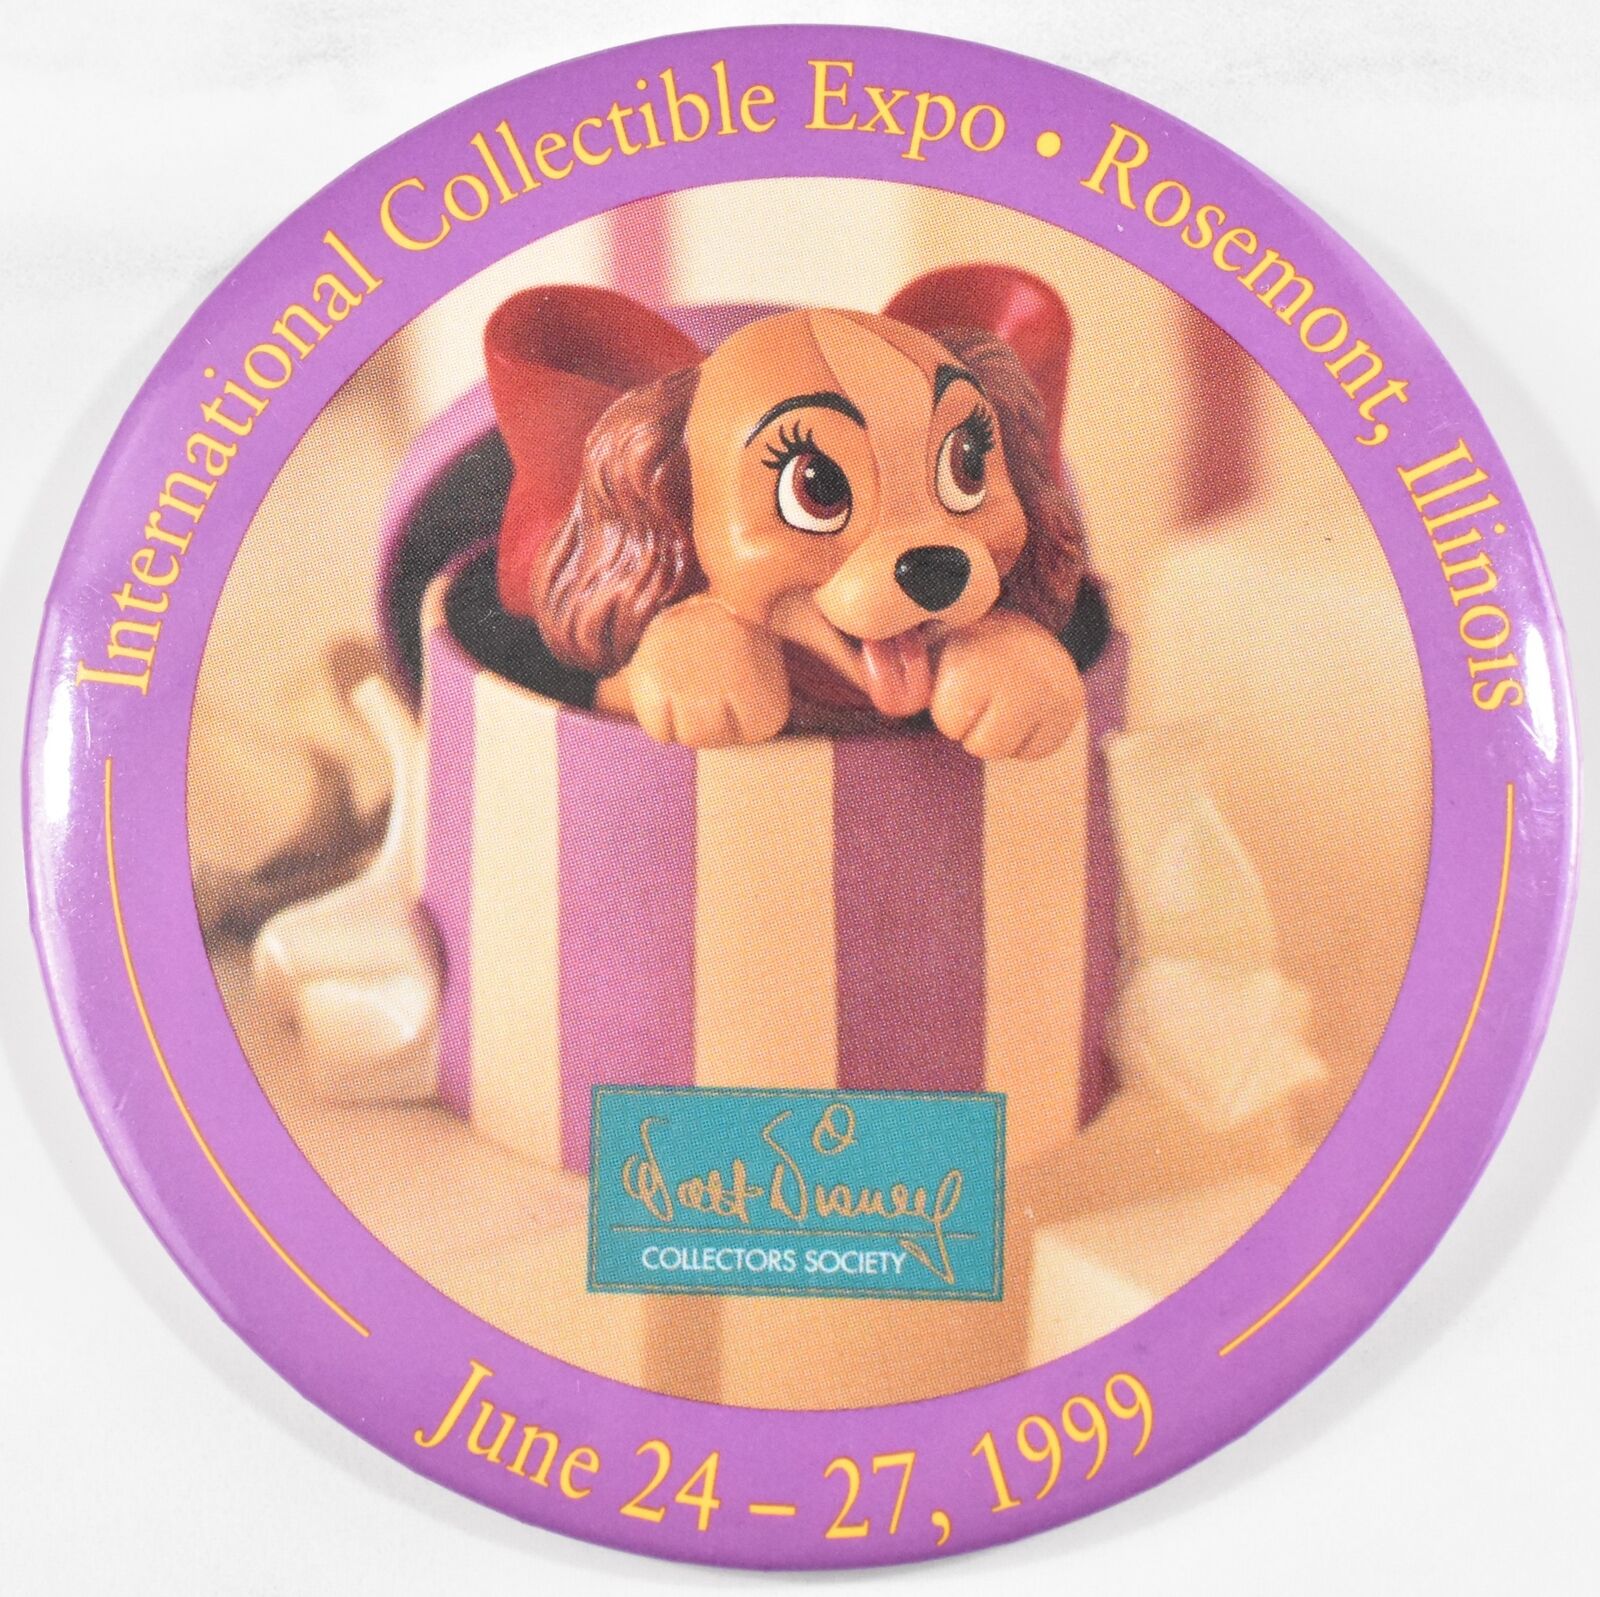 Vtg 1999 Walt Disney Collector's Society International Collectible Expo Button